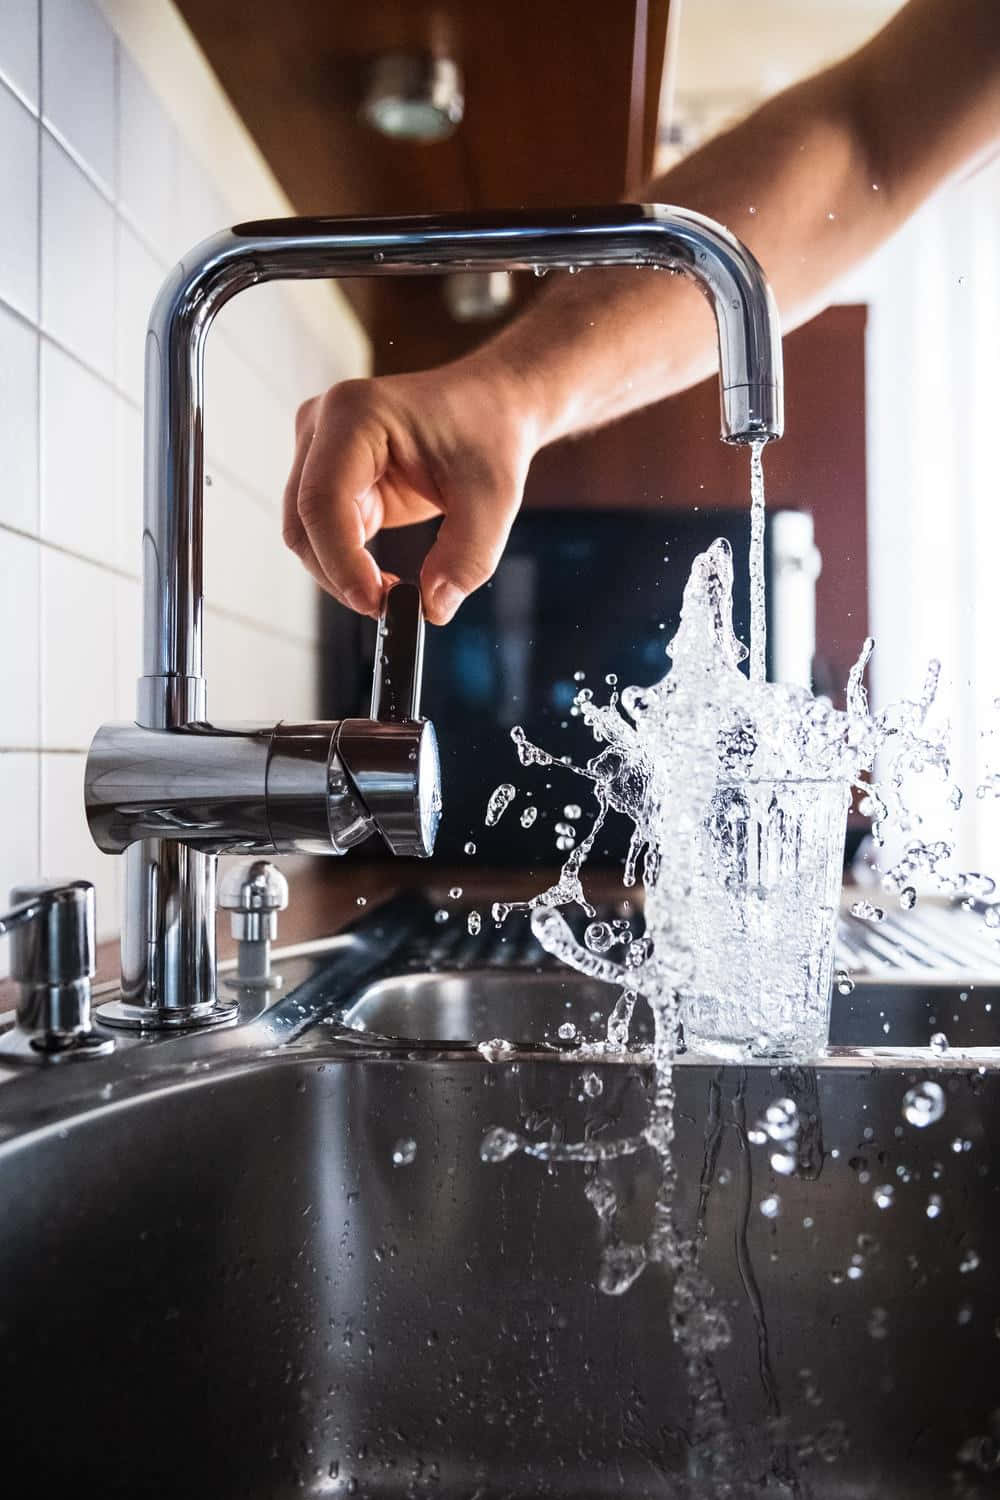 Eineperson Gießt Wasser In Ein Spülbecken In Der Küche.